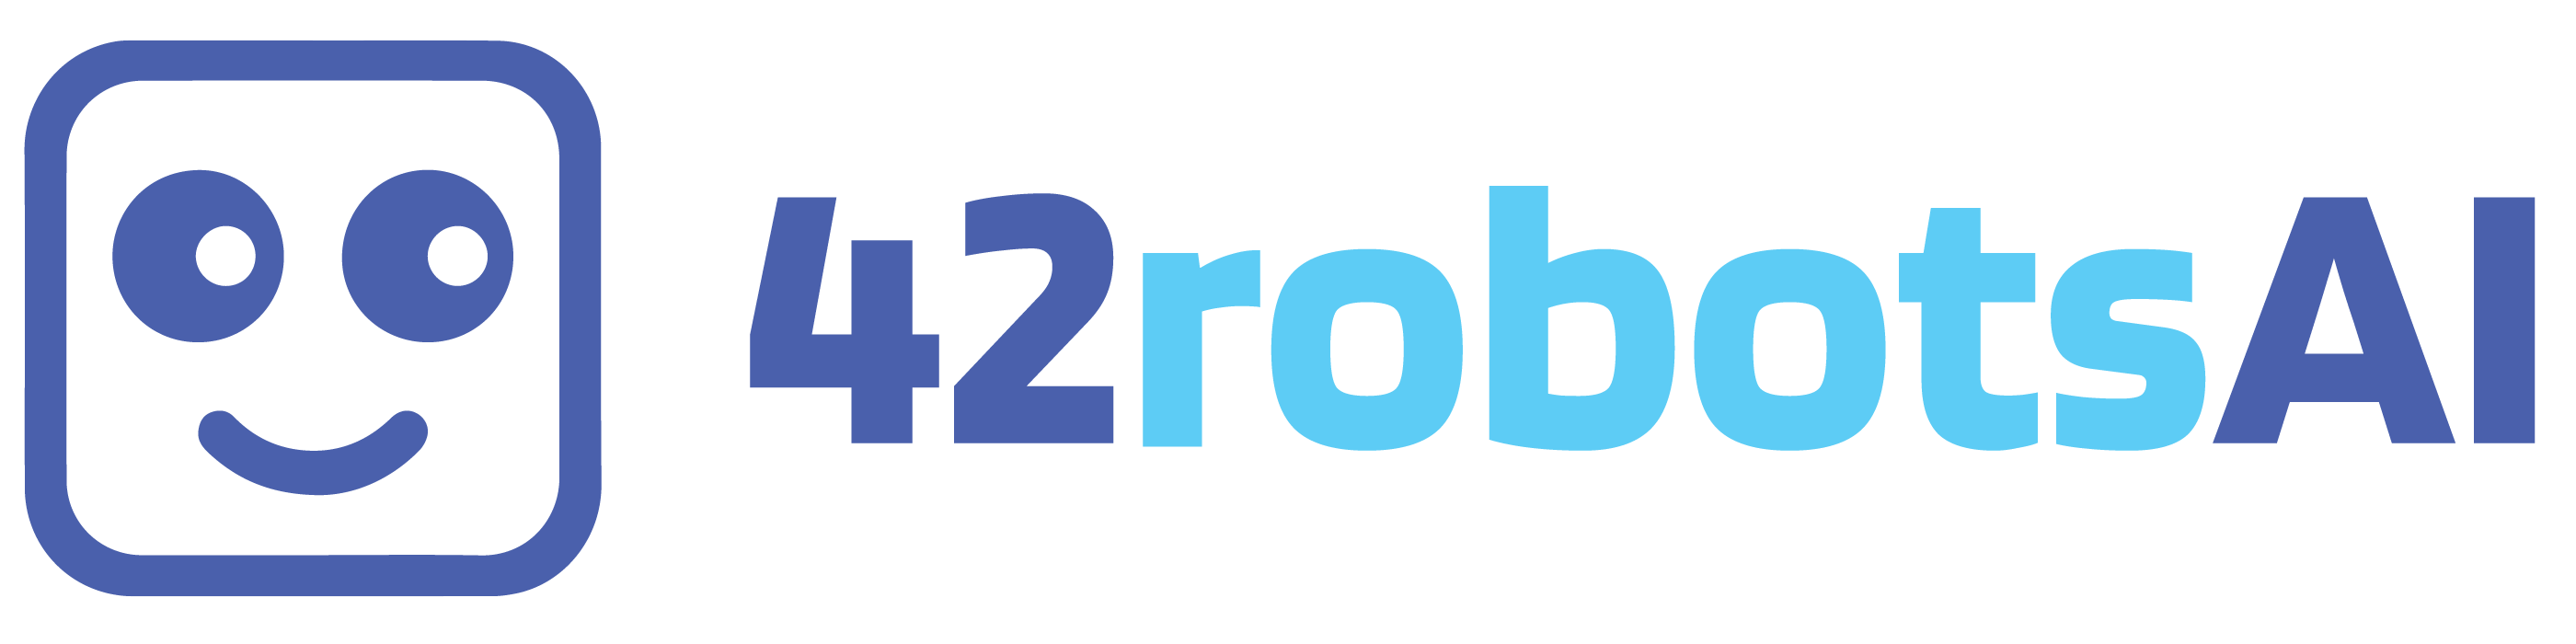 42robotsai_Logo